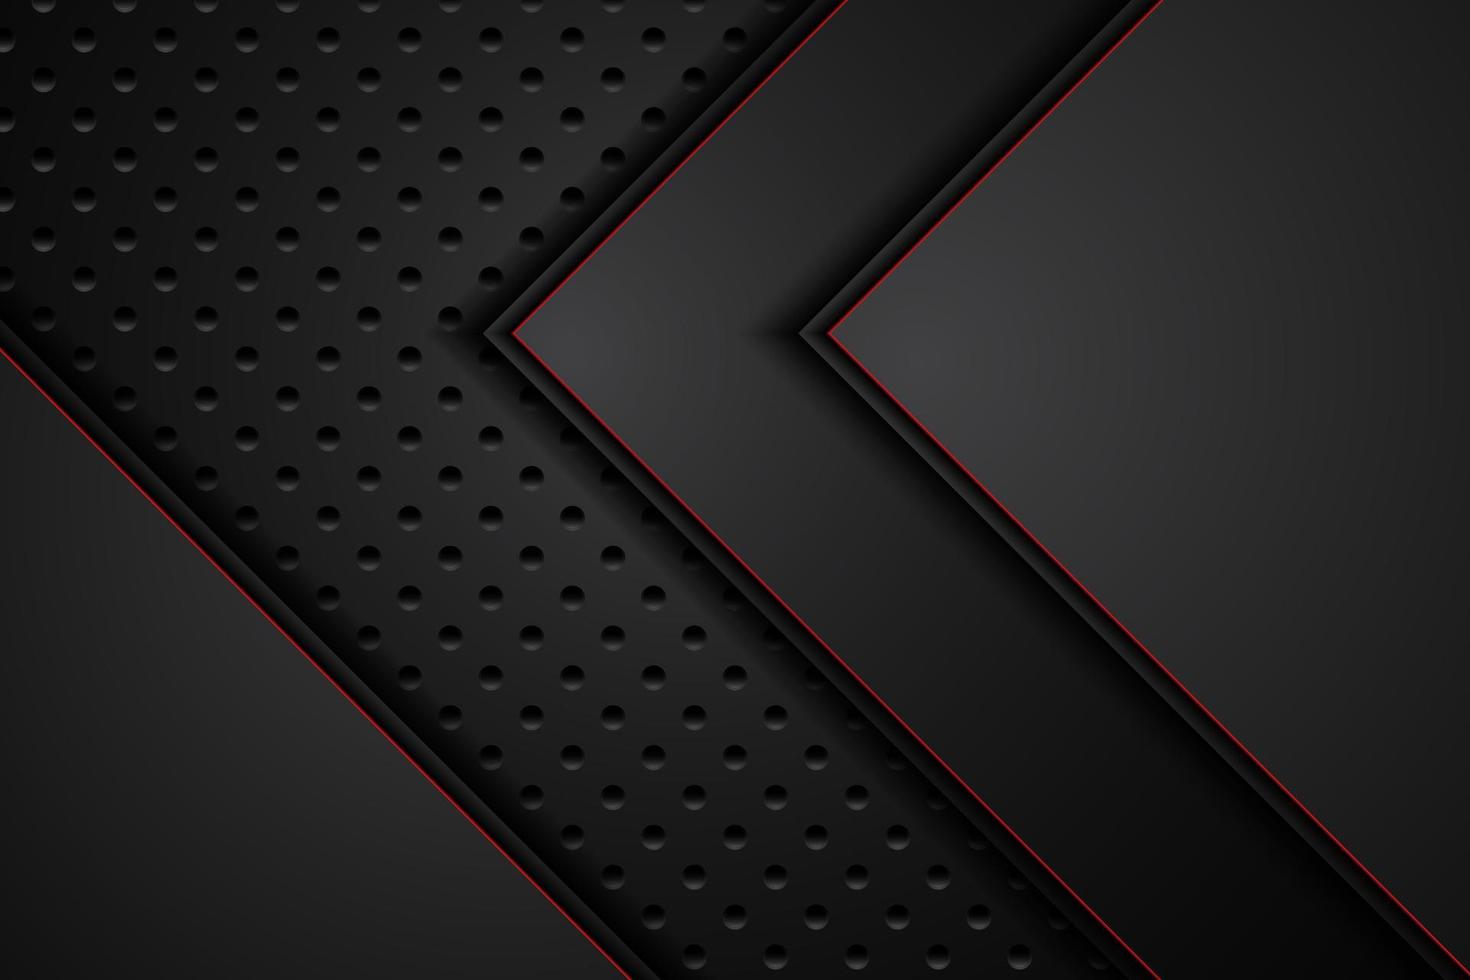 piastra metallica nera e strisce rosse a contrasto su rete d'acciaio. modello di sfondo di progettazione di tecnologia moderna. illustrazione vettoriale